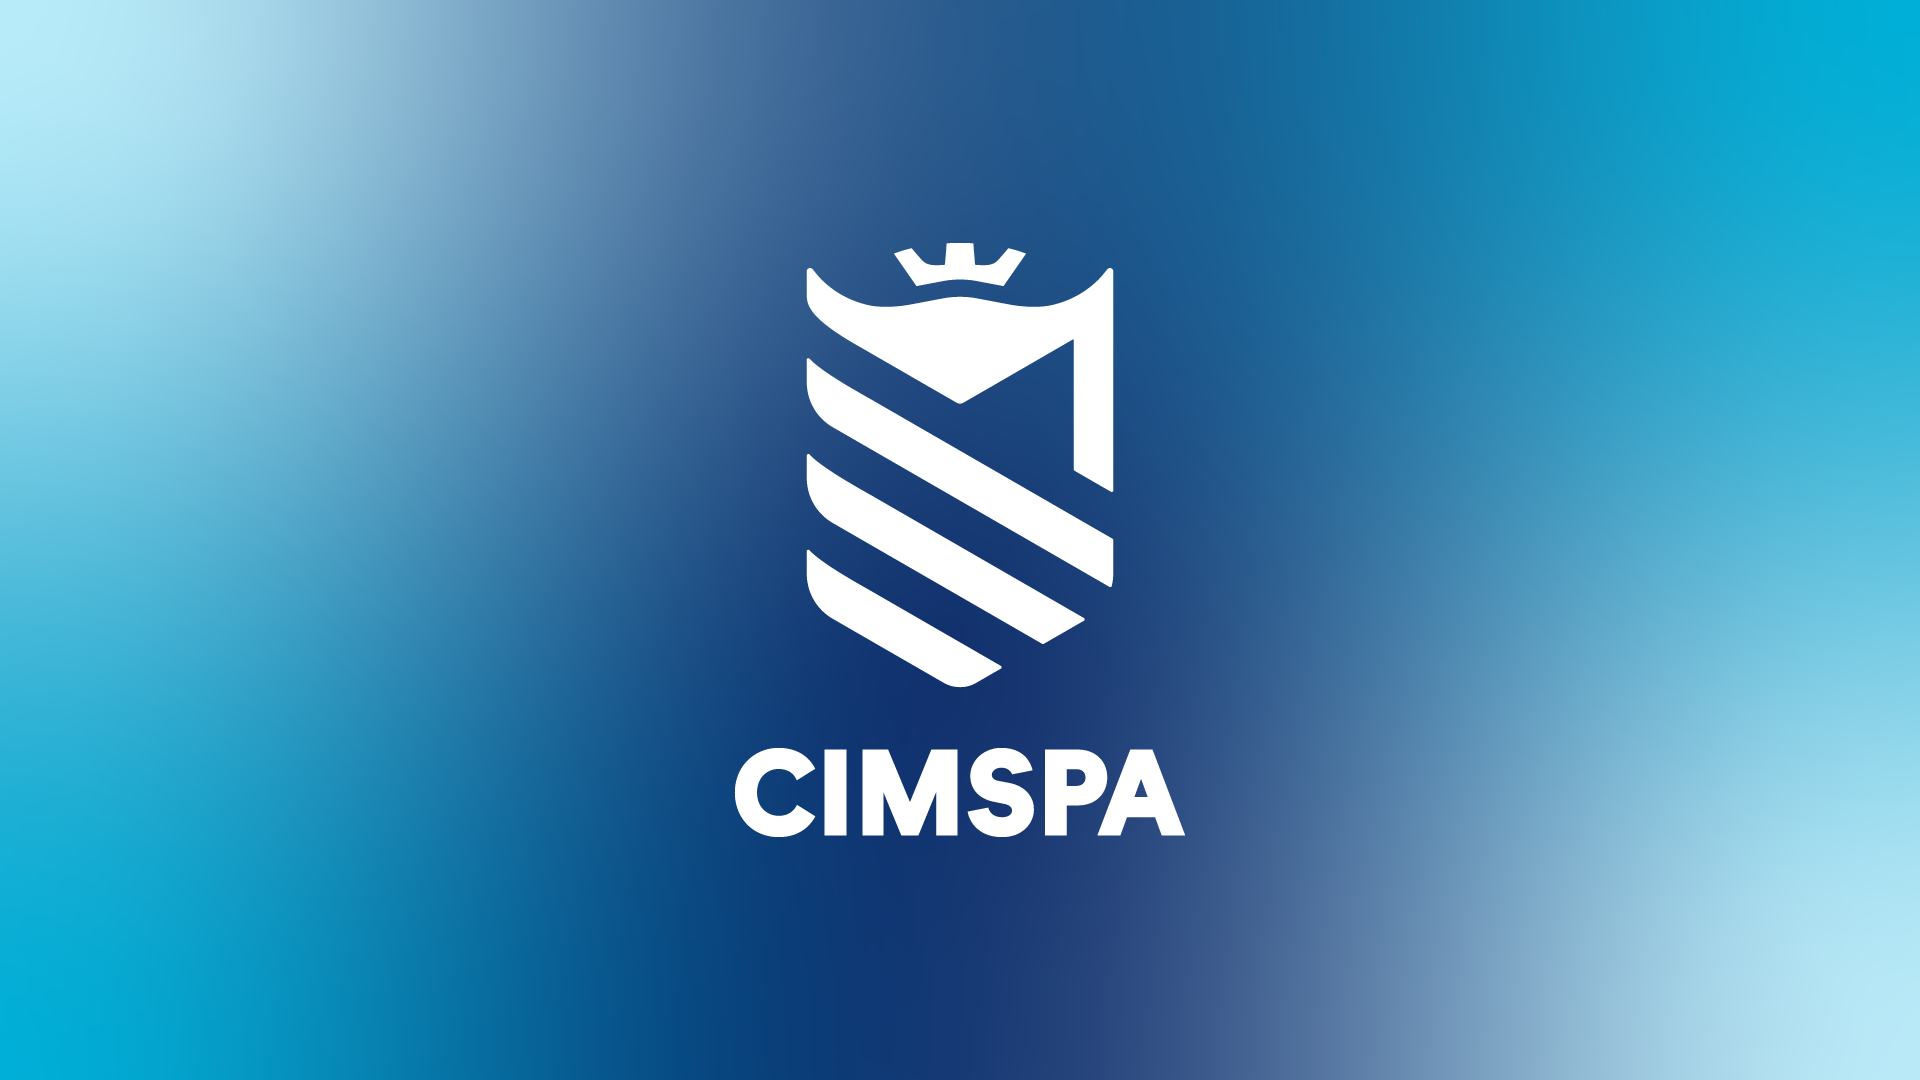 (c) Cimspa.co.uk